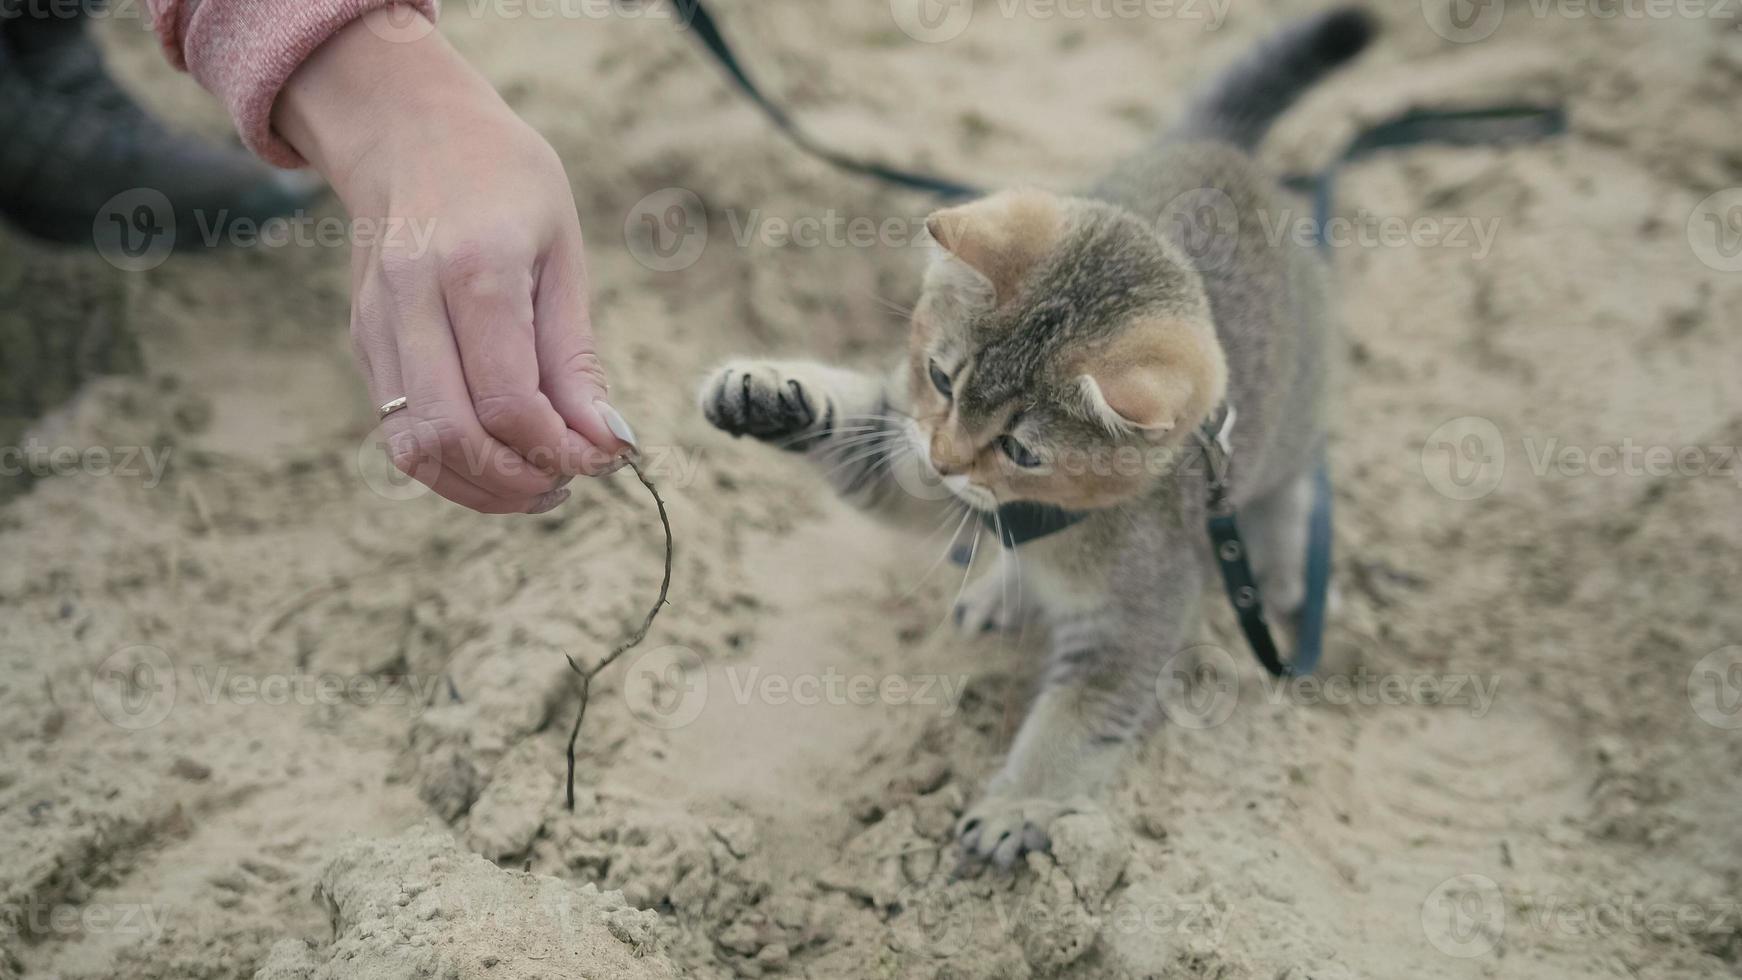 Brits korthaar Cyperse kat in kraag lopen op zand buiten - speelt met de hand van een vrouw, close-up foto